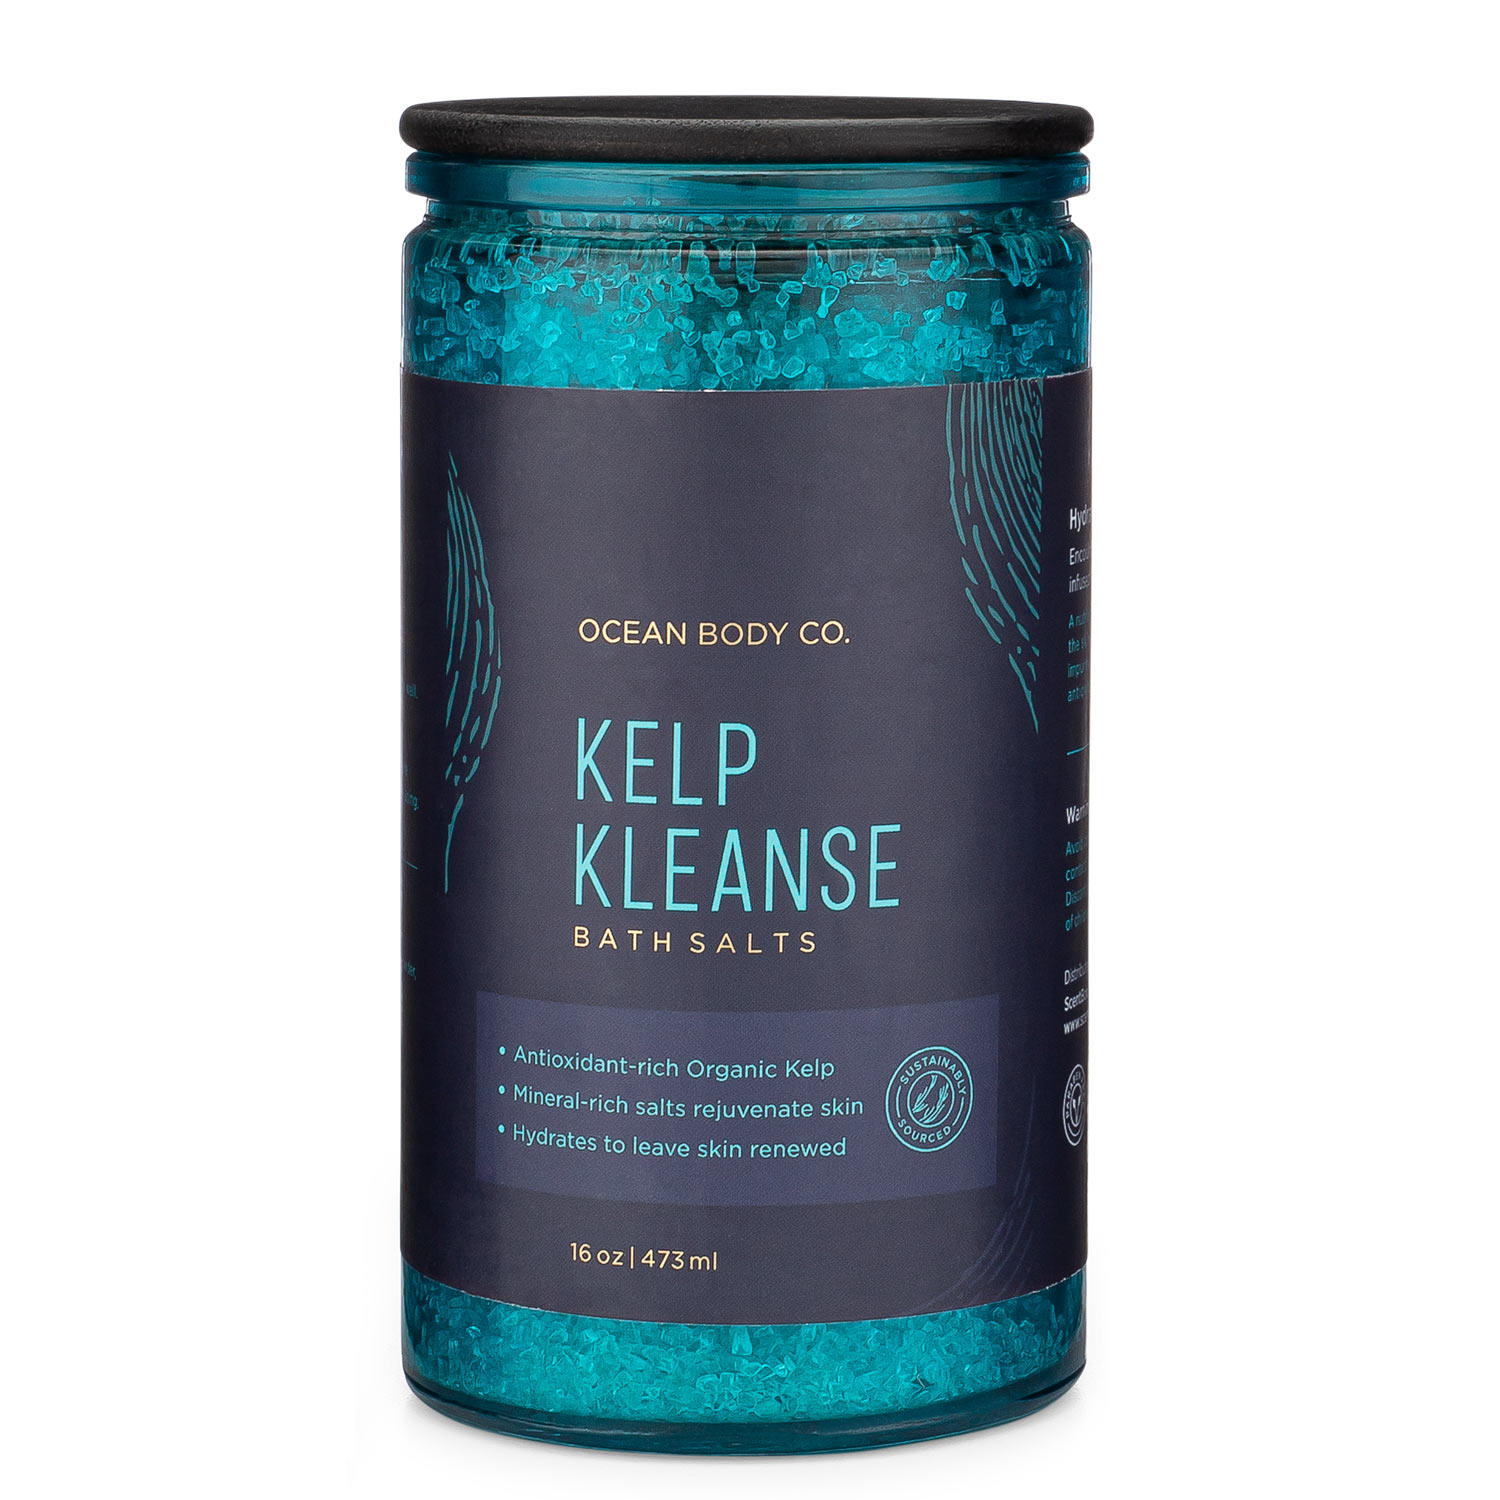 Kelp-Kleanse-Bath-Salts-Ocean-Body-Co.